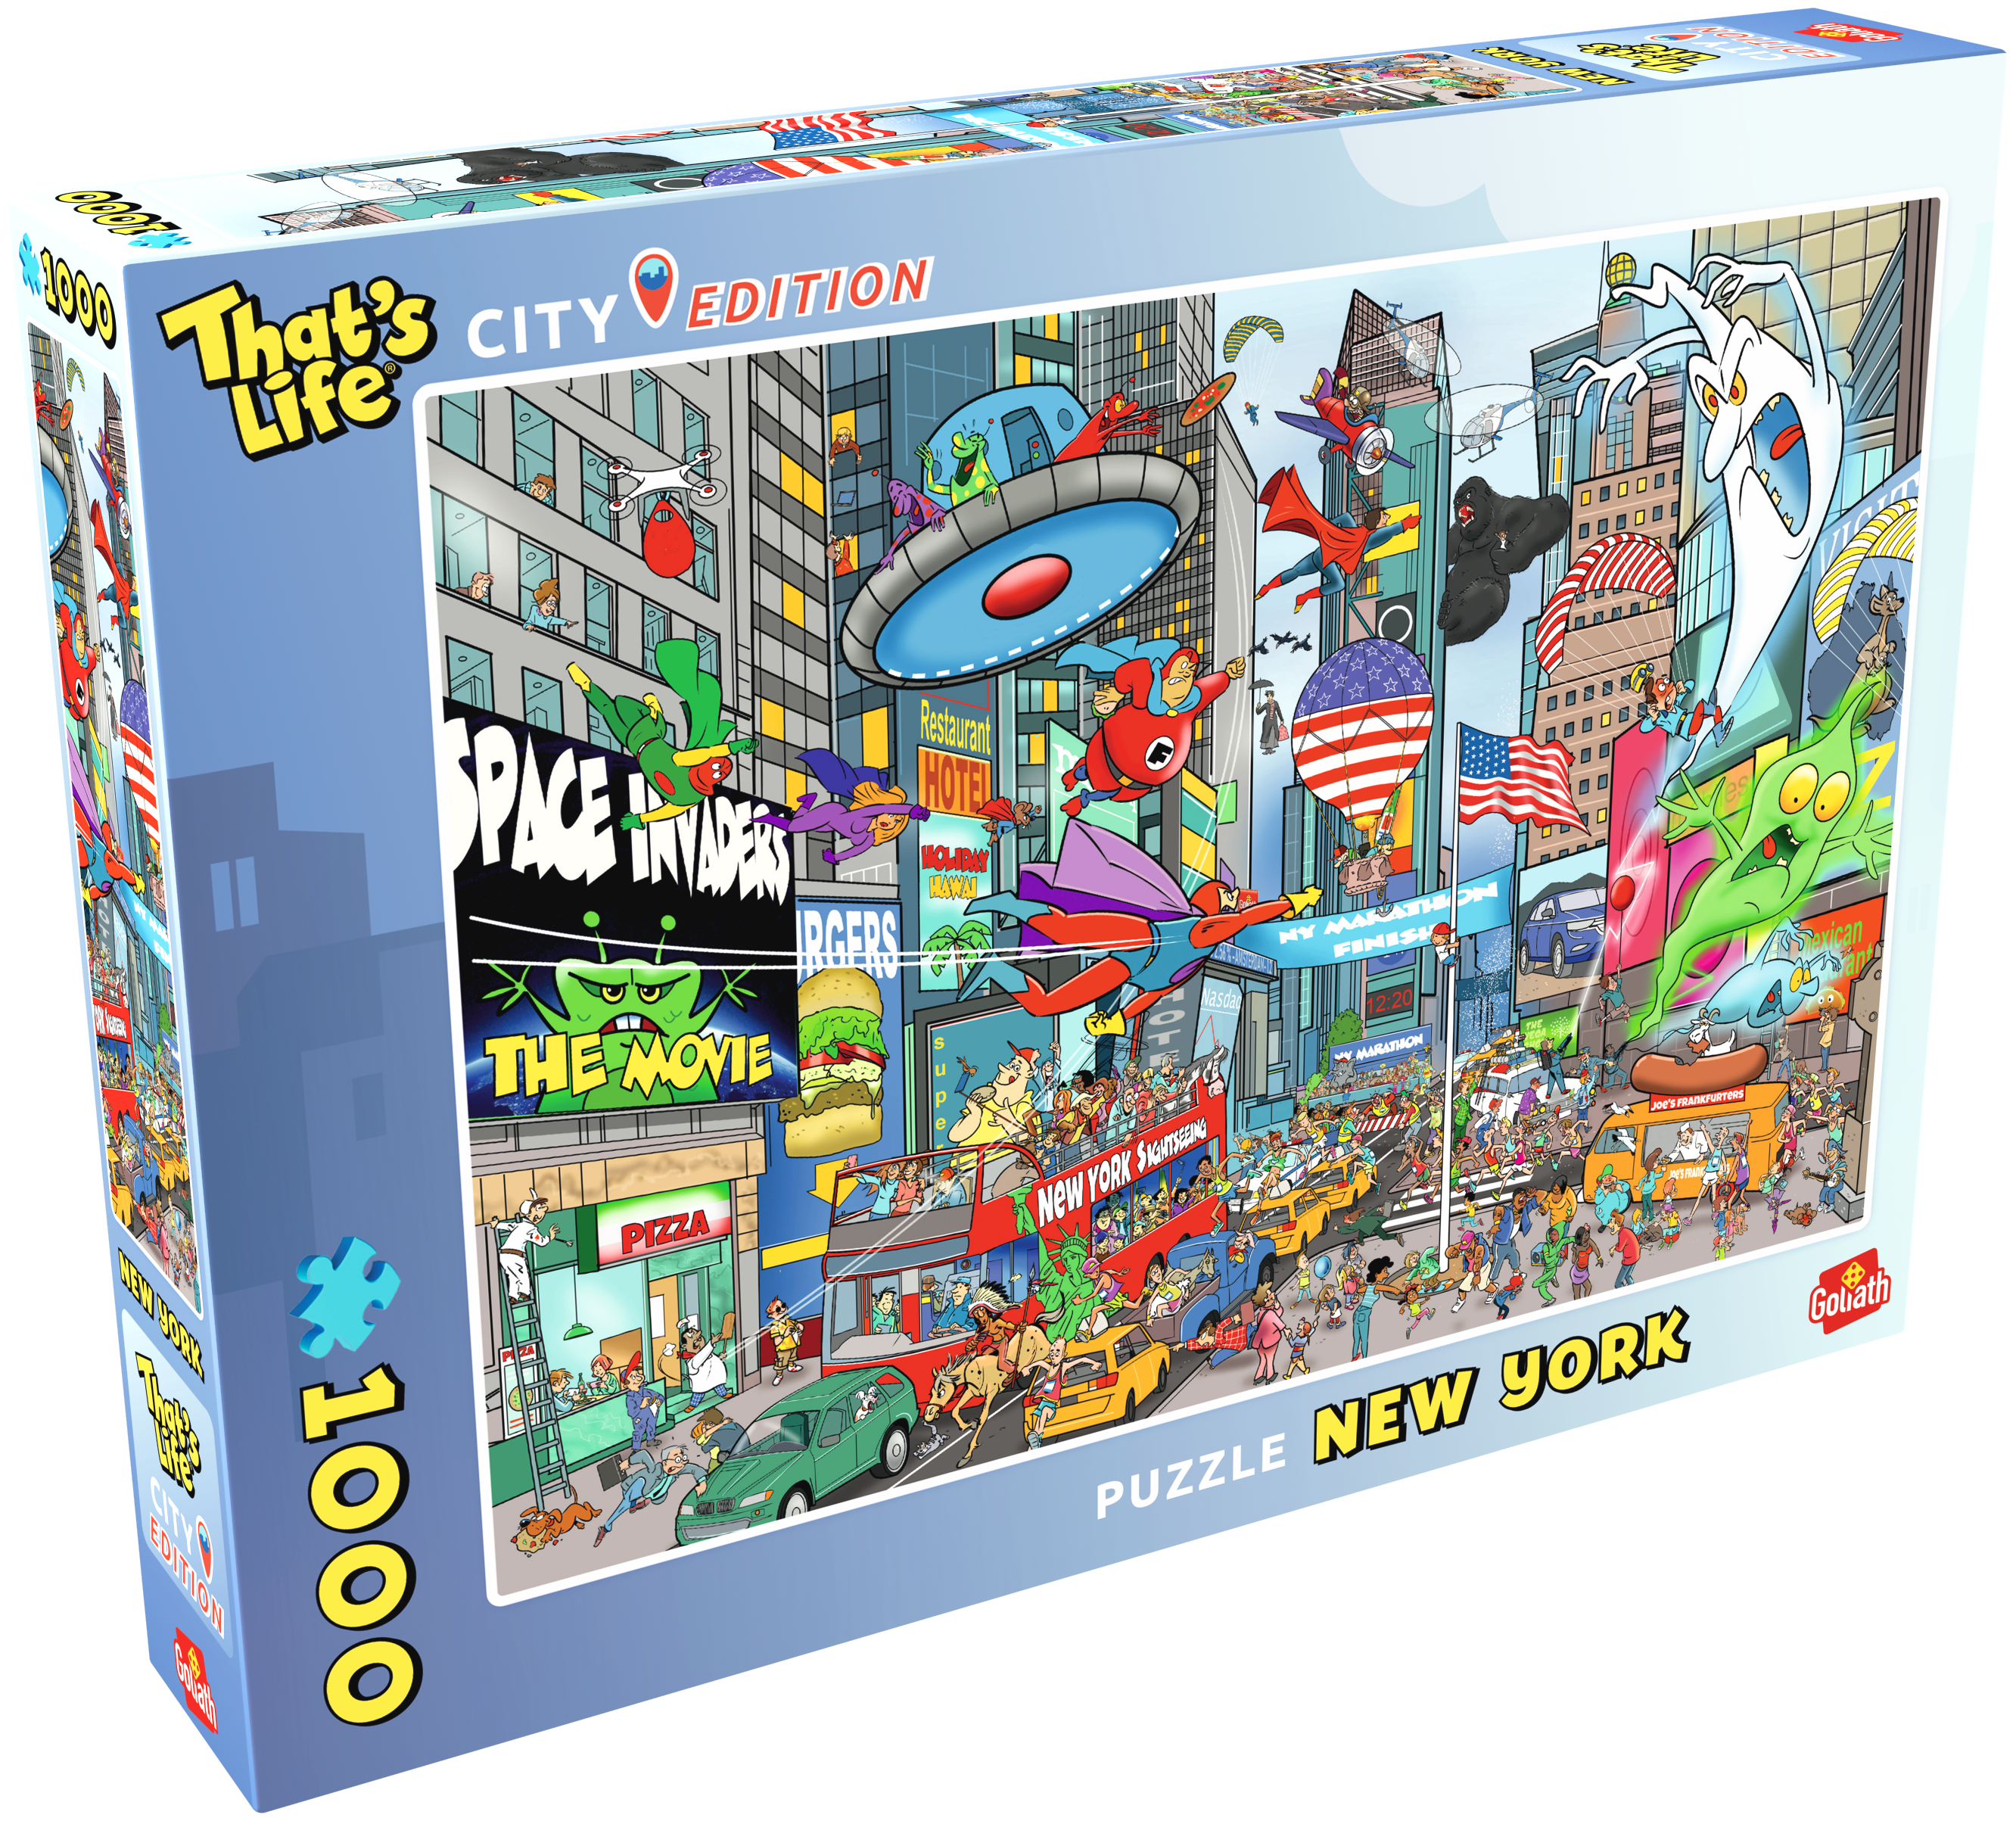 De doos van de That's Life City Edition New York puzzel vanuit een linkerhoek